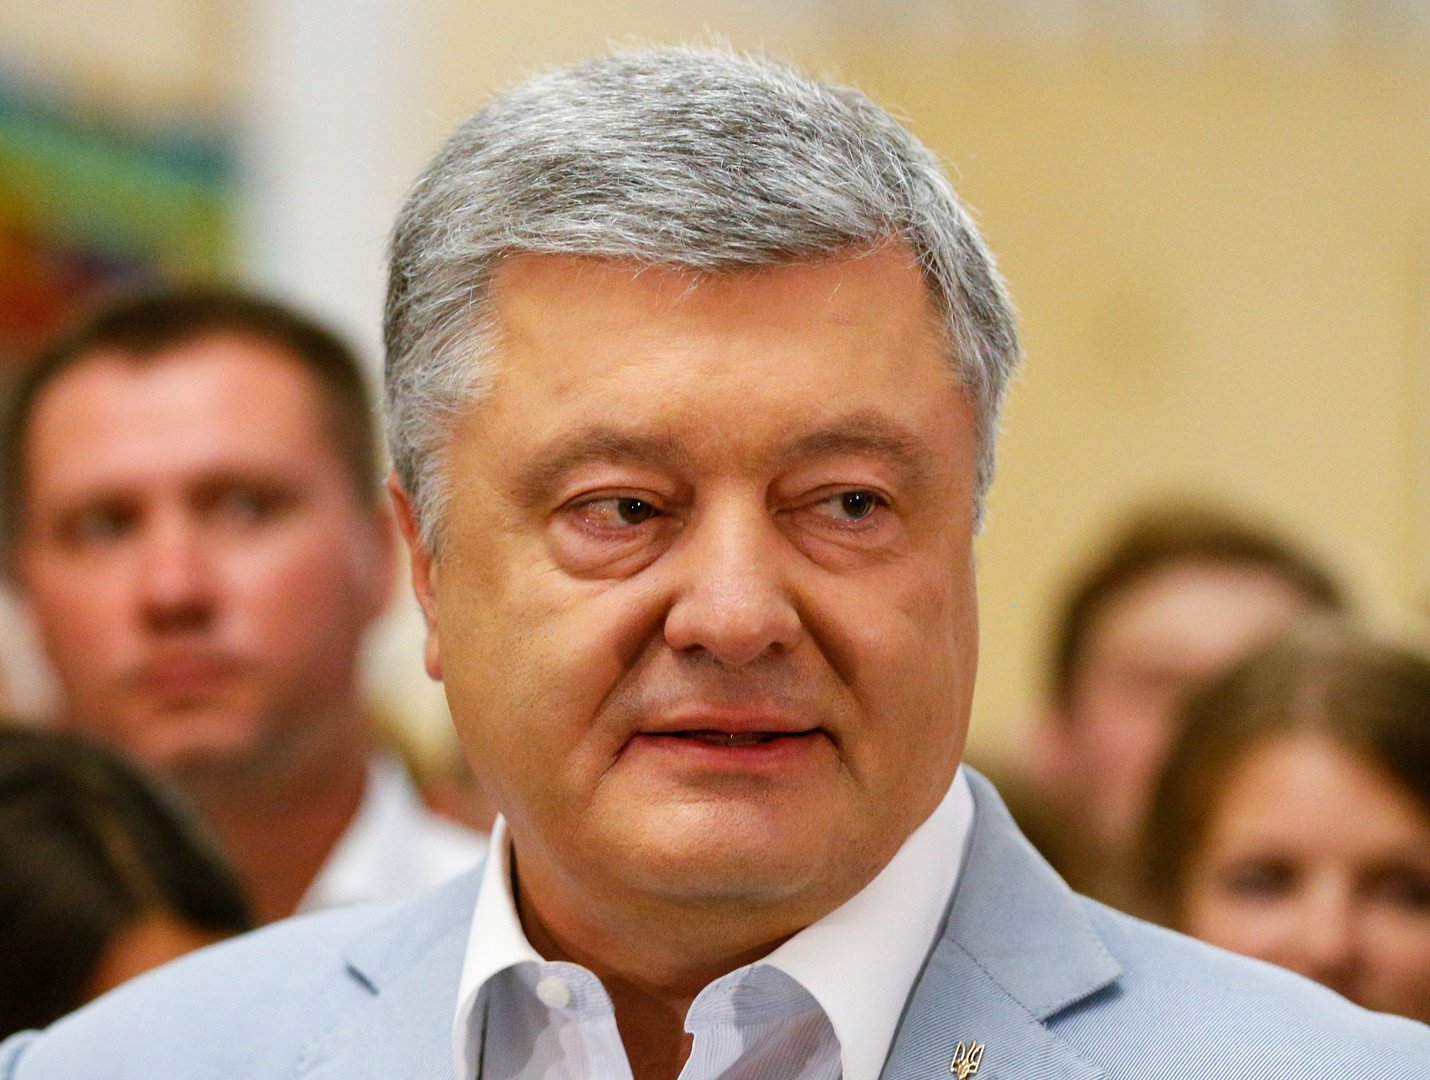 فتح قضية جنائية تاسعة بحق الرئيس الأوكراني السابق